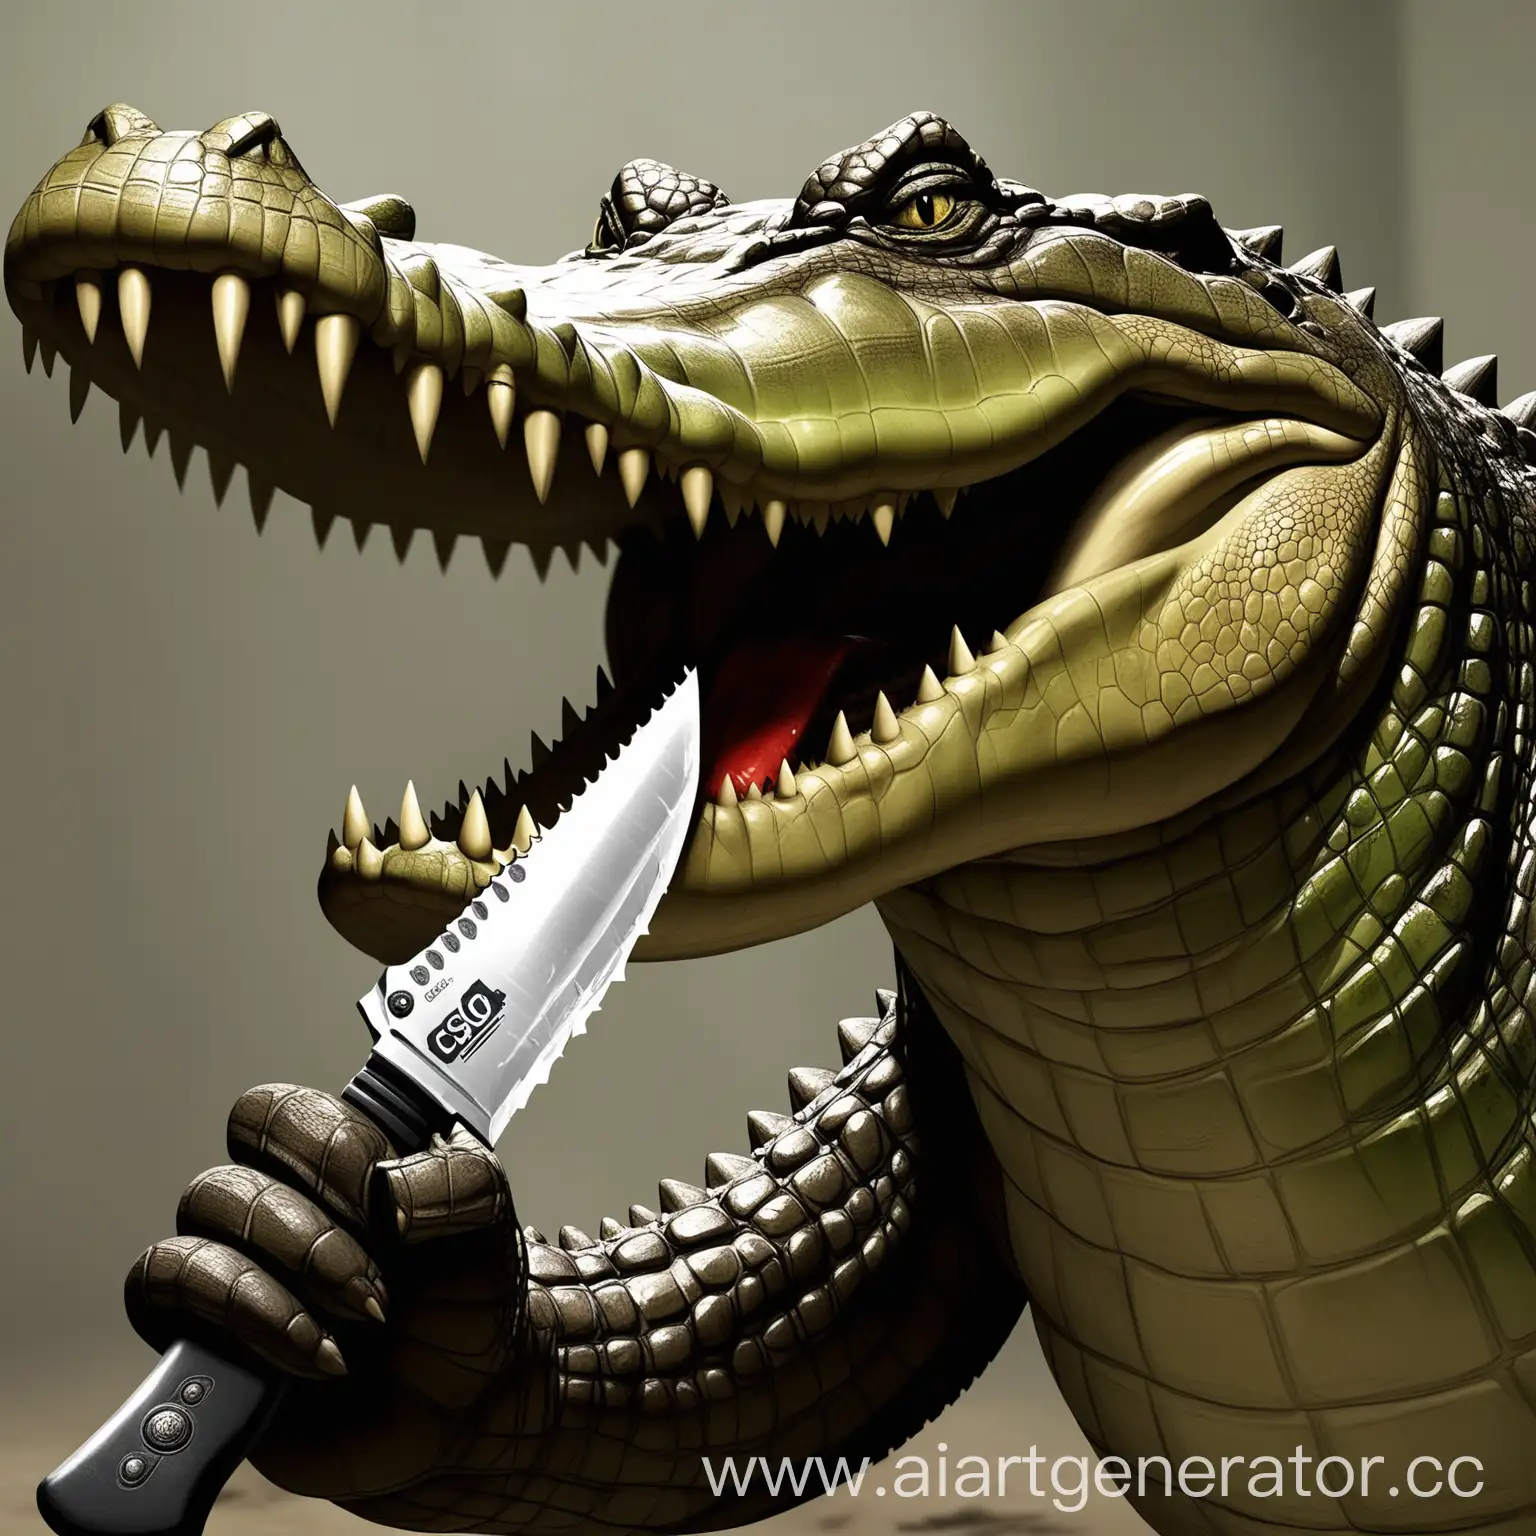 крокодил, в рту держит большой нож из кс го